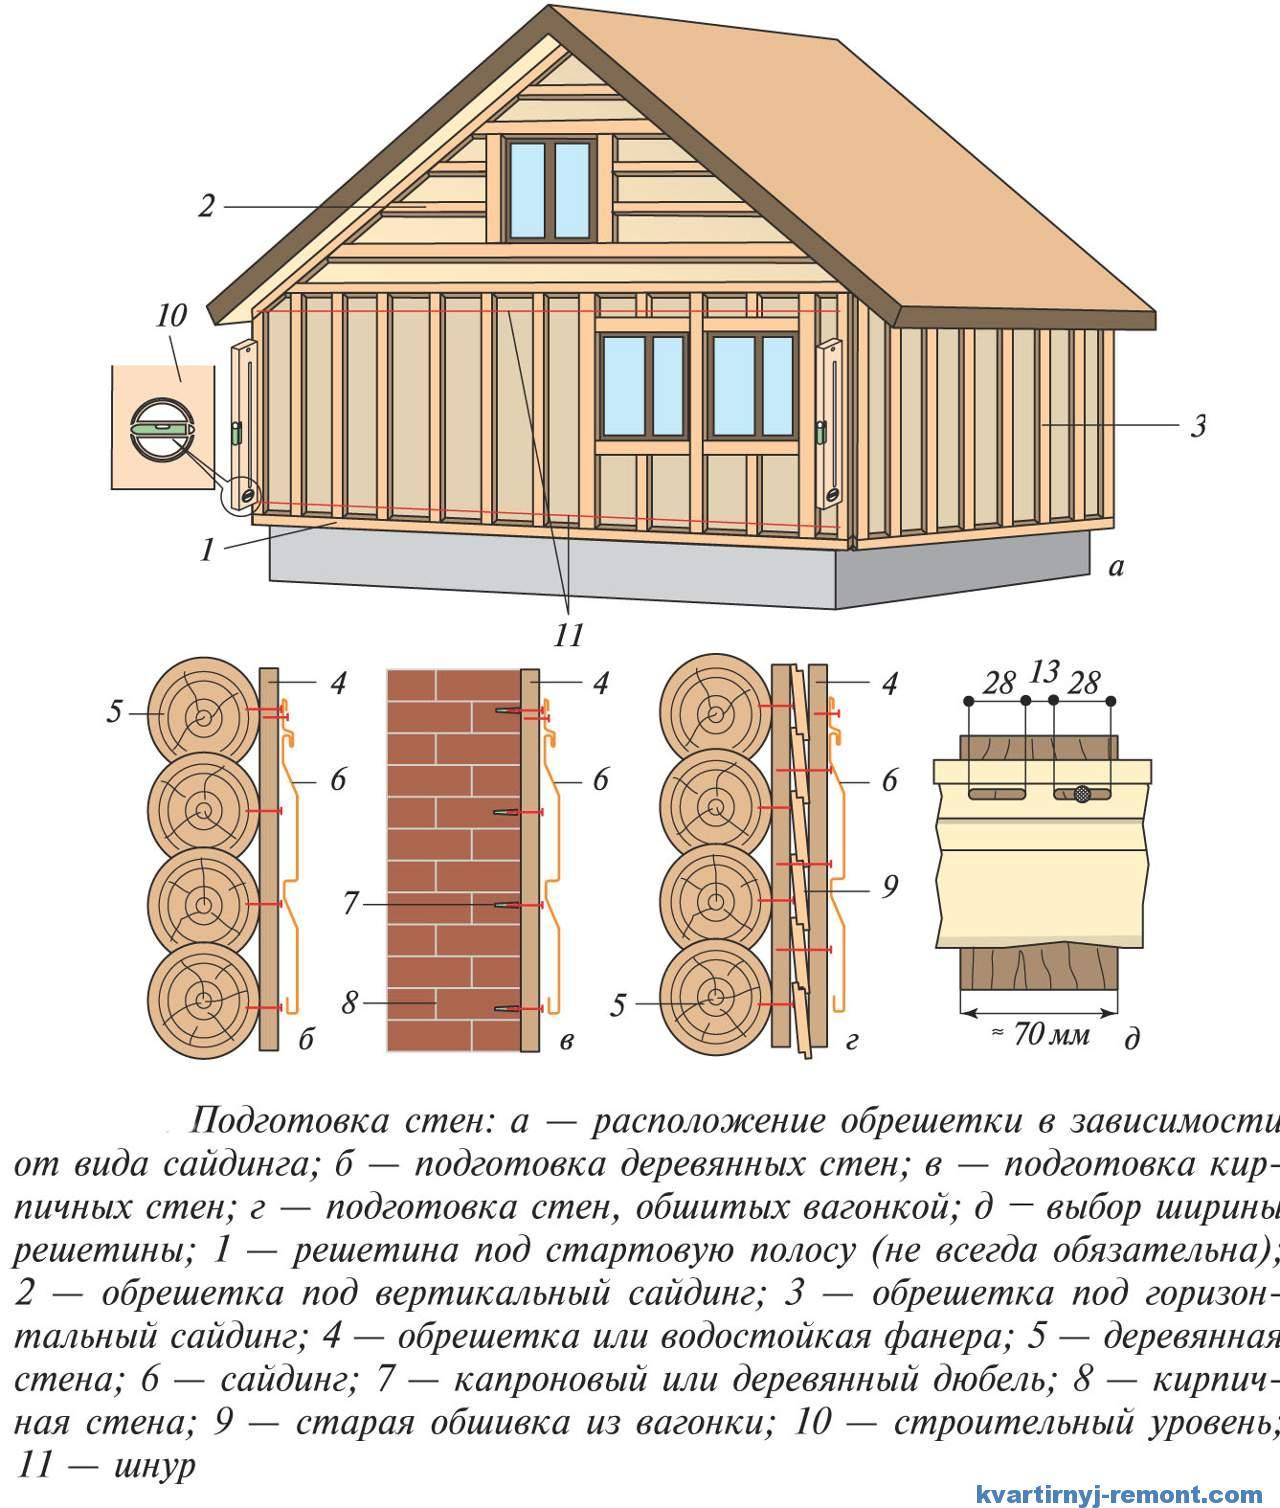 Обшивка дома металлосайдингом своими руками – пошаговое руководство | mastera-fasada.ru | все про отделку фасада дома